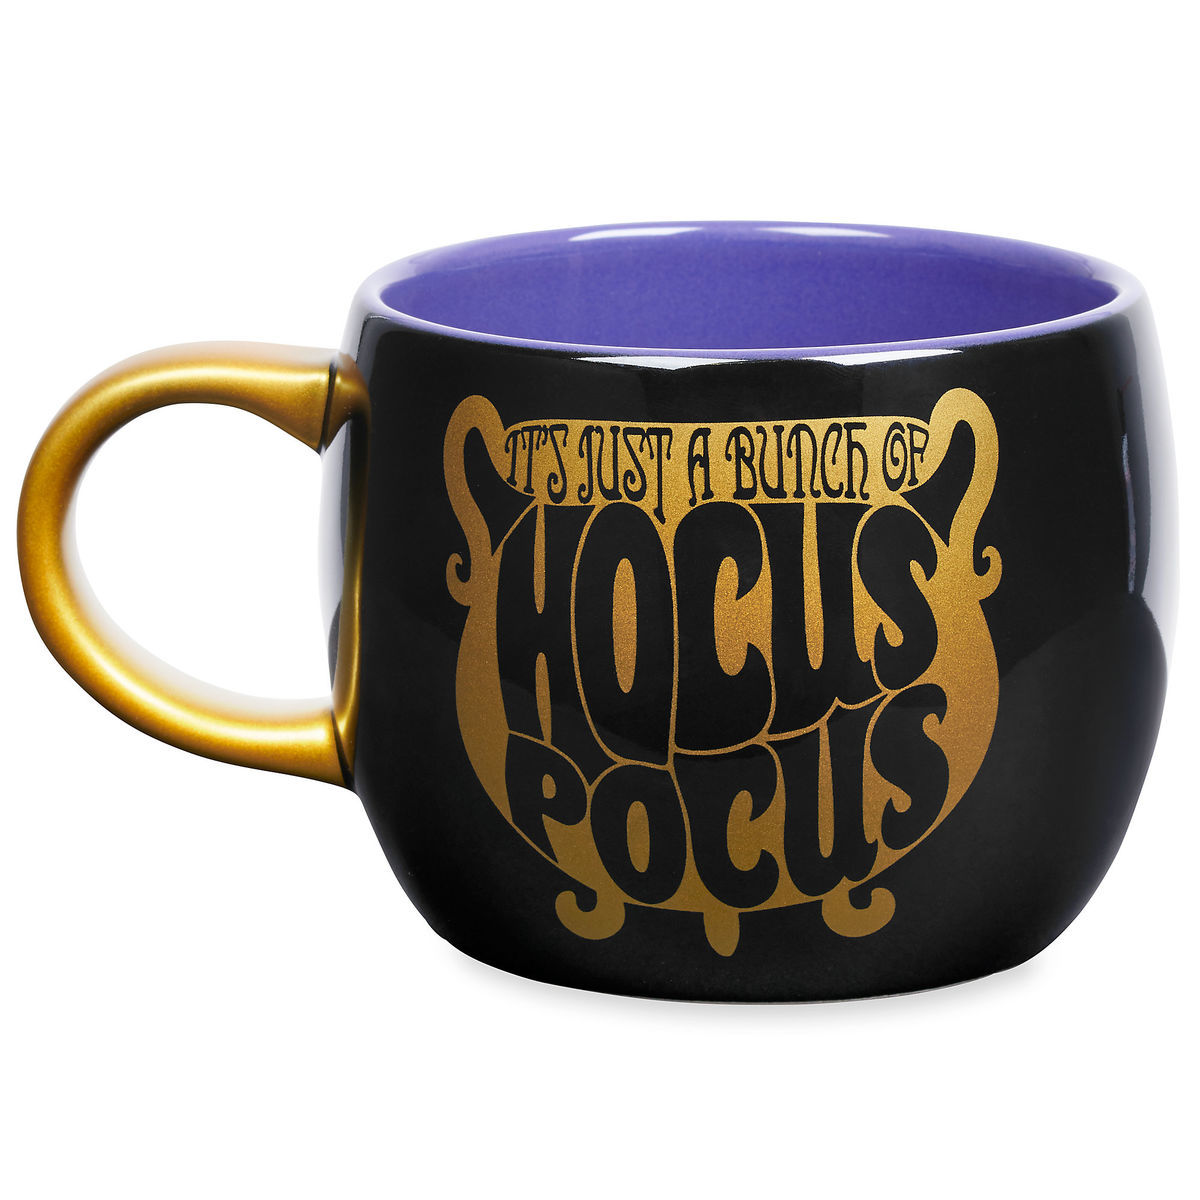 Hocus Pocus Mug